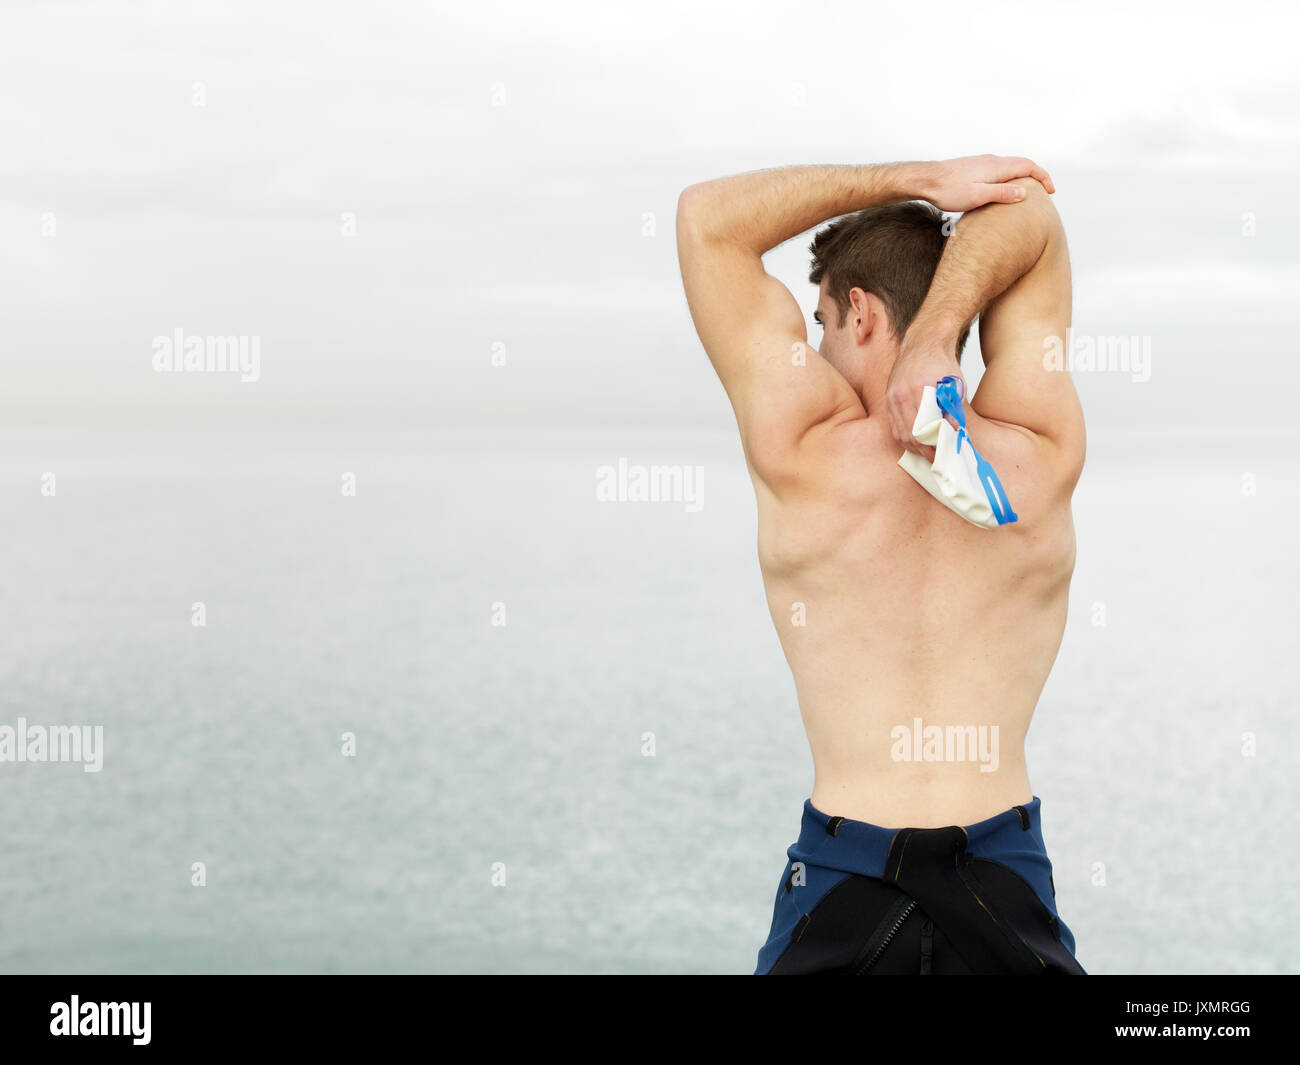 Ansicht der Rückseite des bare chested Mann aufwärmen, Stretching Arms, Melbourne, Victoria, Australien, Ozeanien Stockfoto